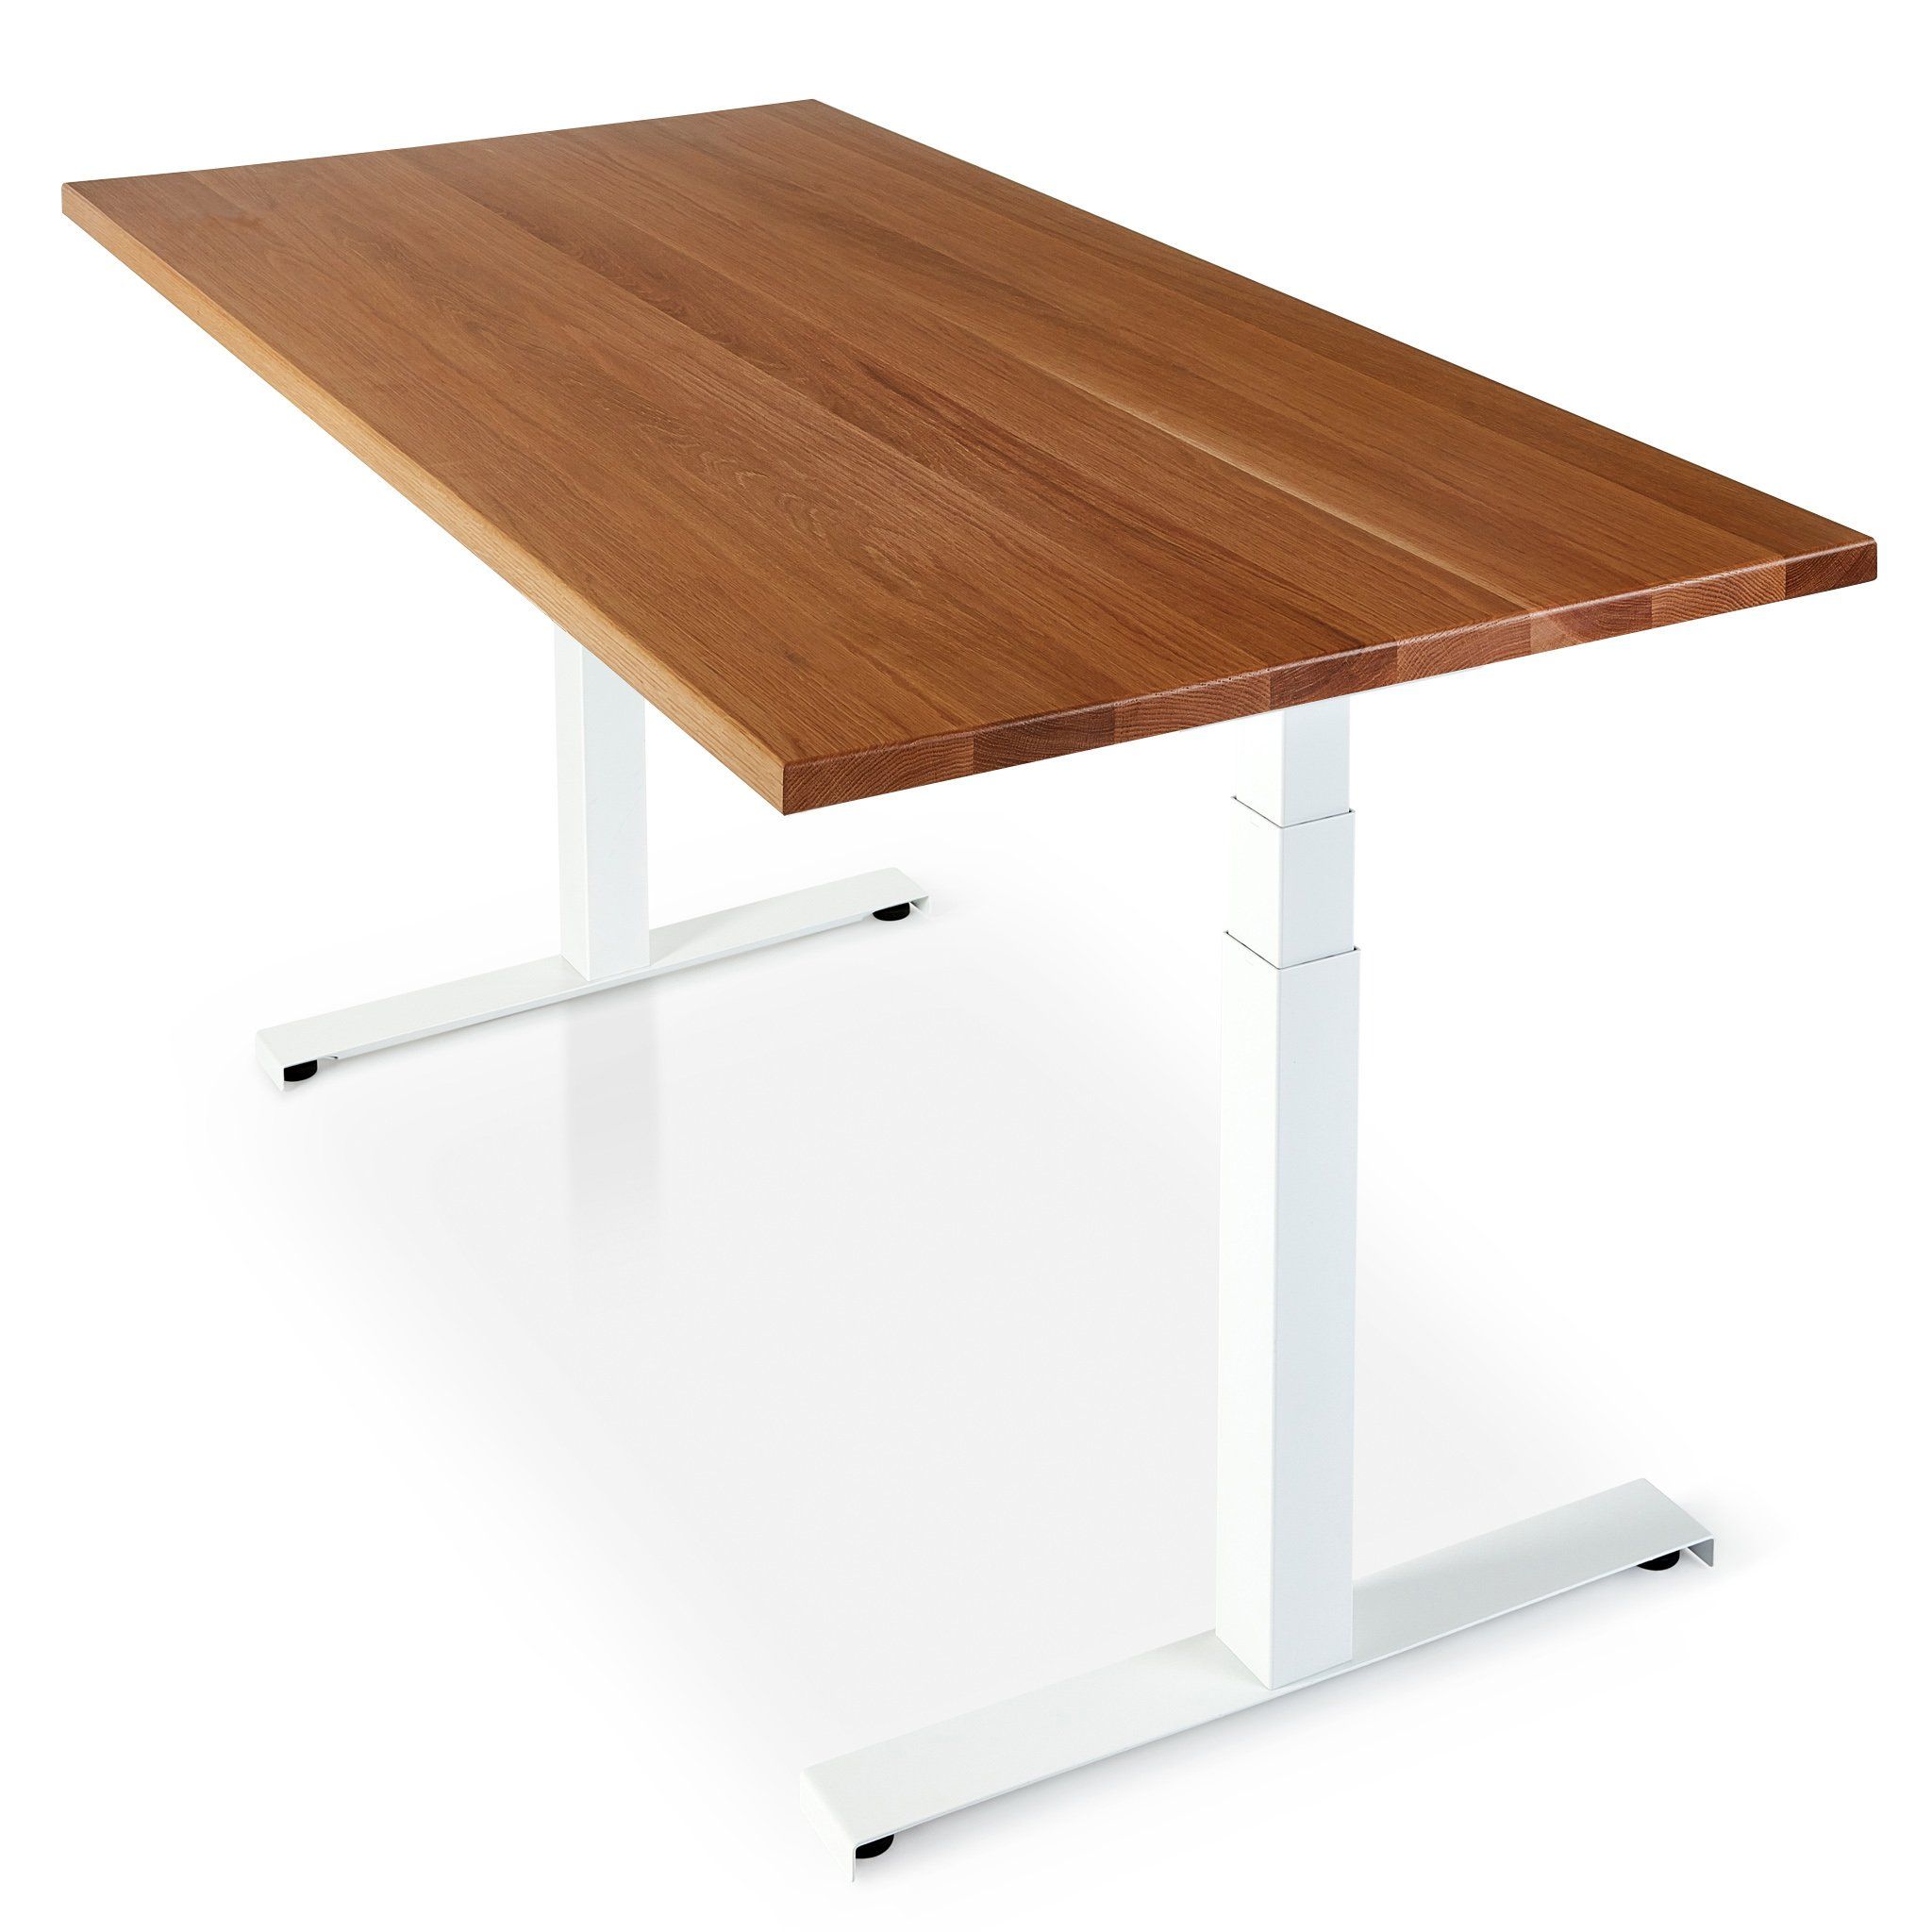 Sisu Oak Standing Desk white adjustable frame